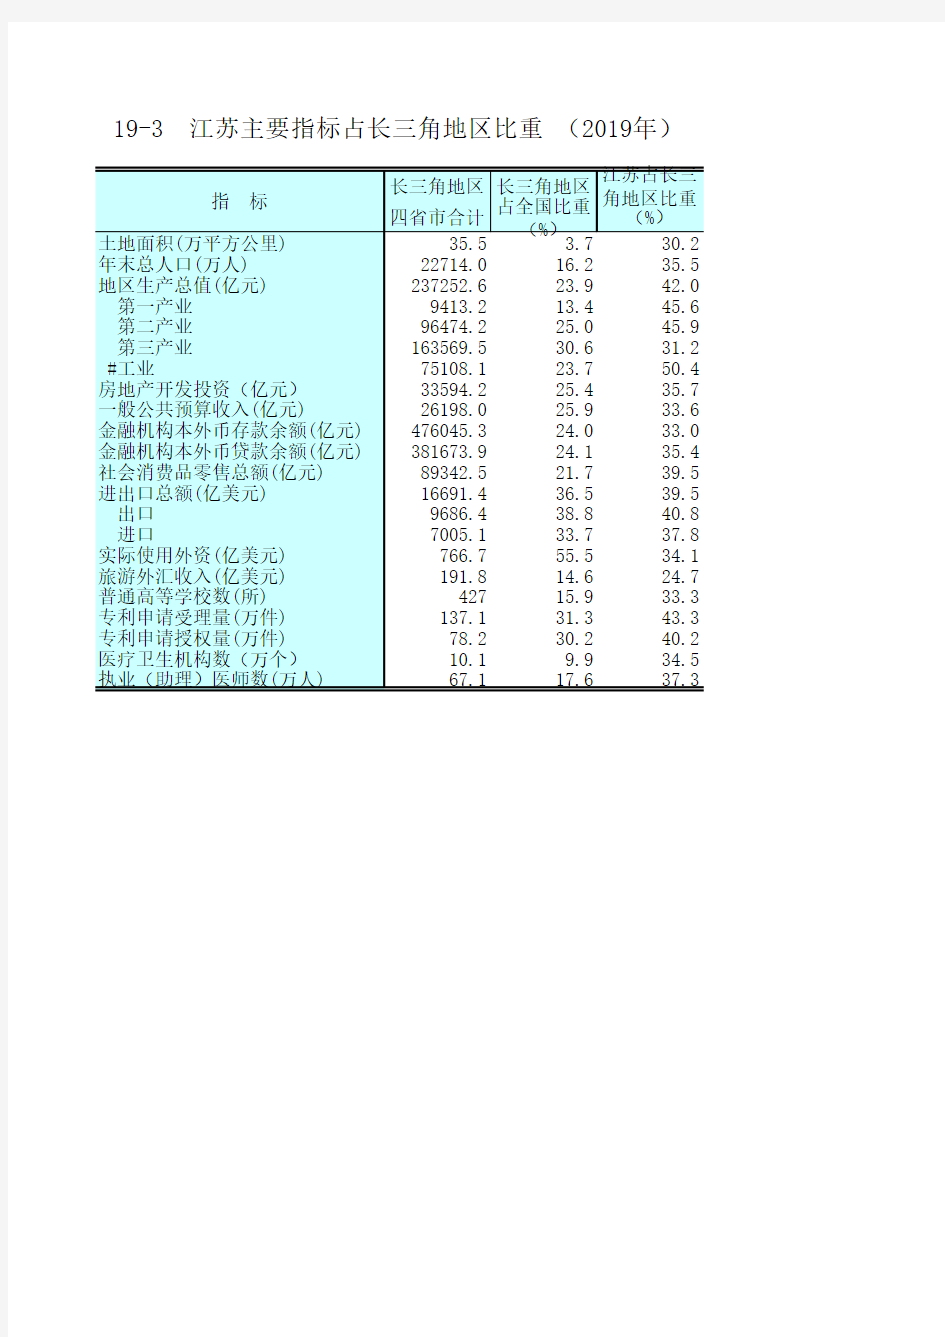 江苏统计年鉴2020社会经济发展指标：江苏指标占长三角地区比重(2019年)